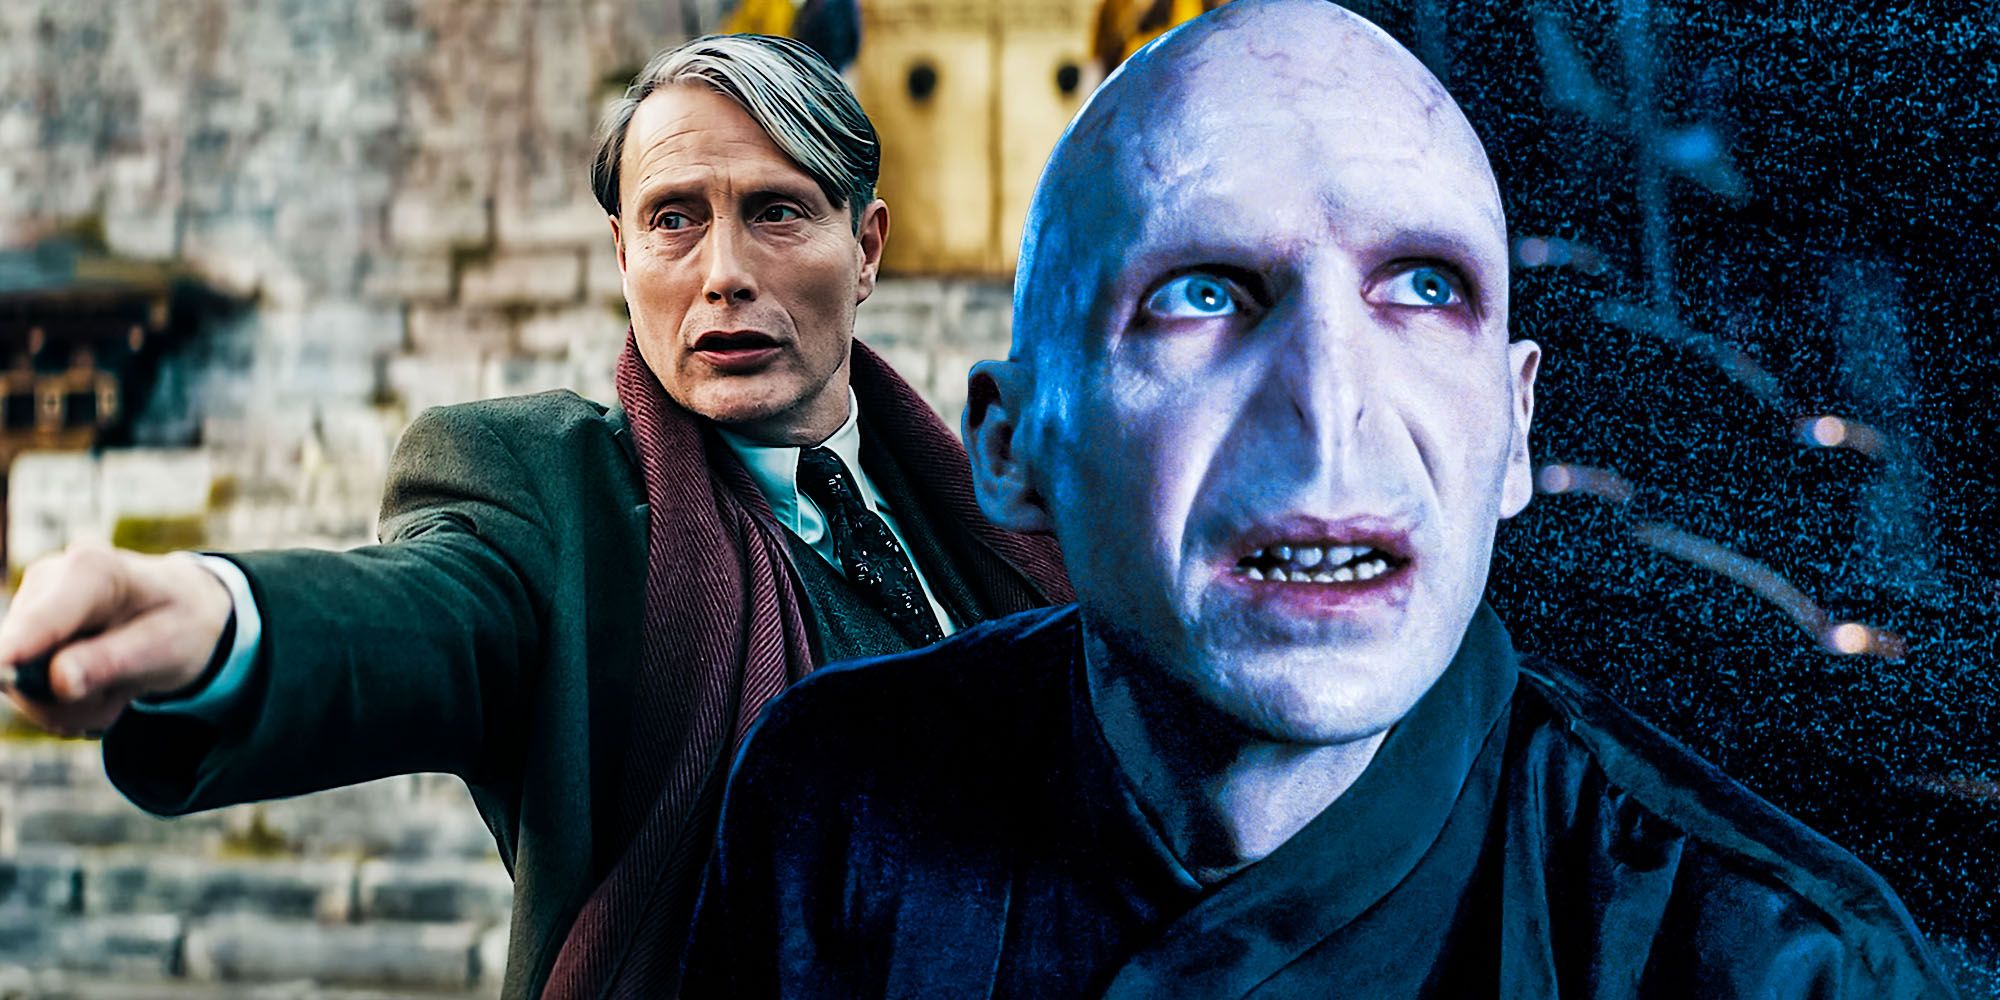 Fantastic Beasts secrets of dumbledore detail links grindelwald to Voldemort